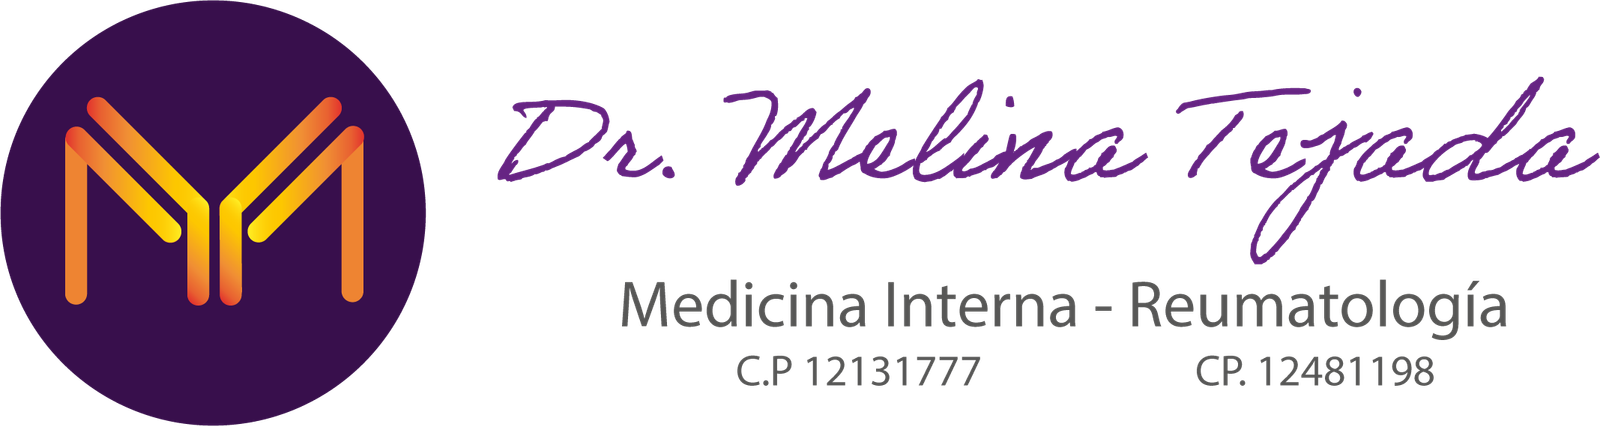 Reumatologo Melina Tejada Logo